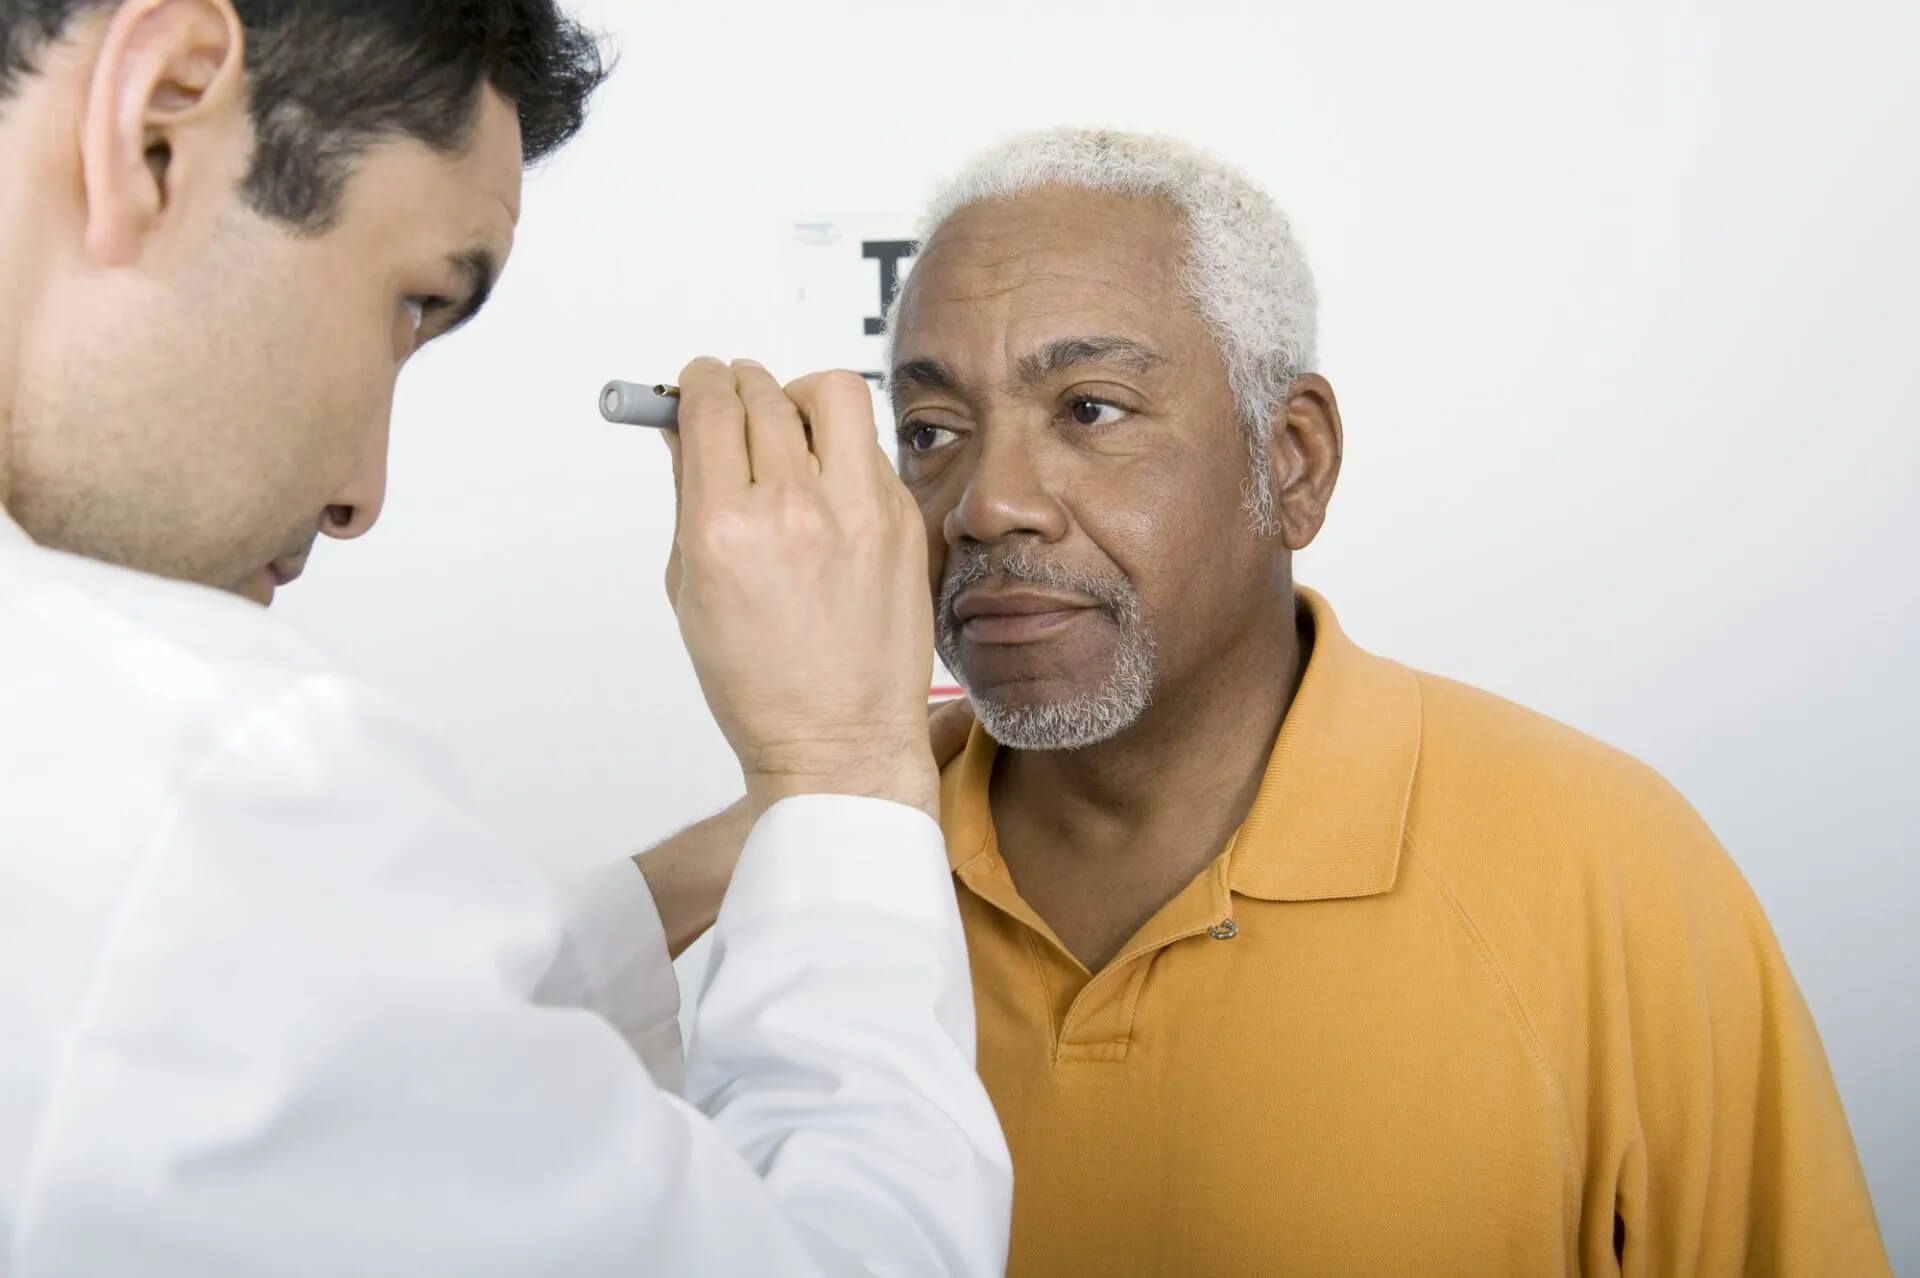 Glaucoma Treatment